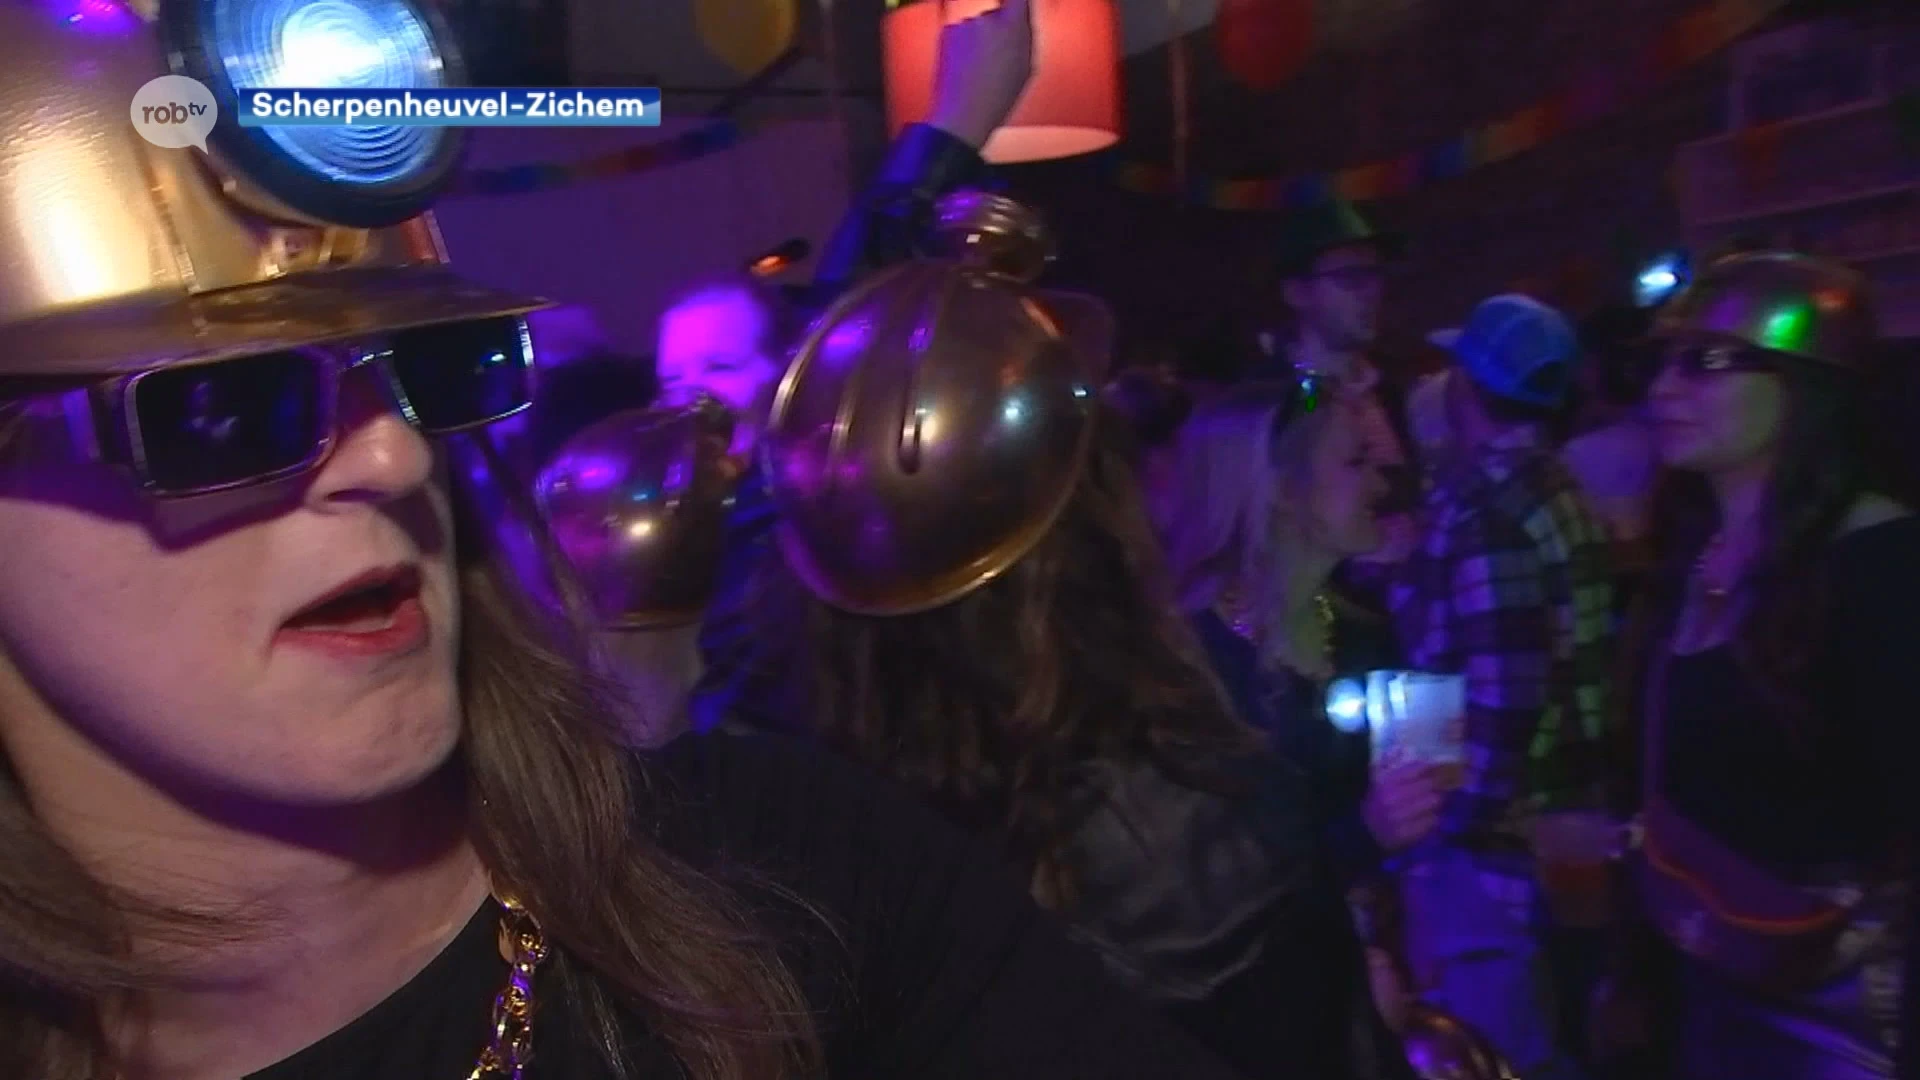 Honderden carnavalisten vieren de "zotte nacht" in Zichem: "Eén keer per jaar komt Kelly buiten, en dan gaat ze helemaal los!"